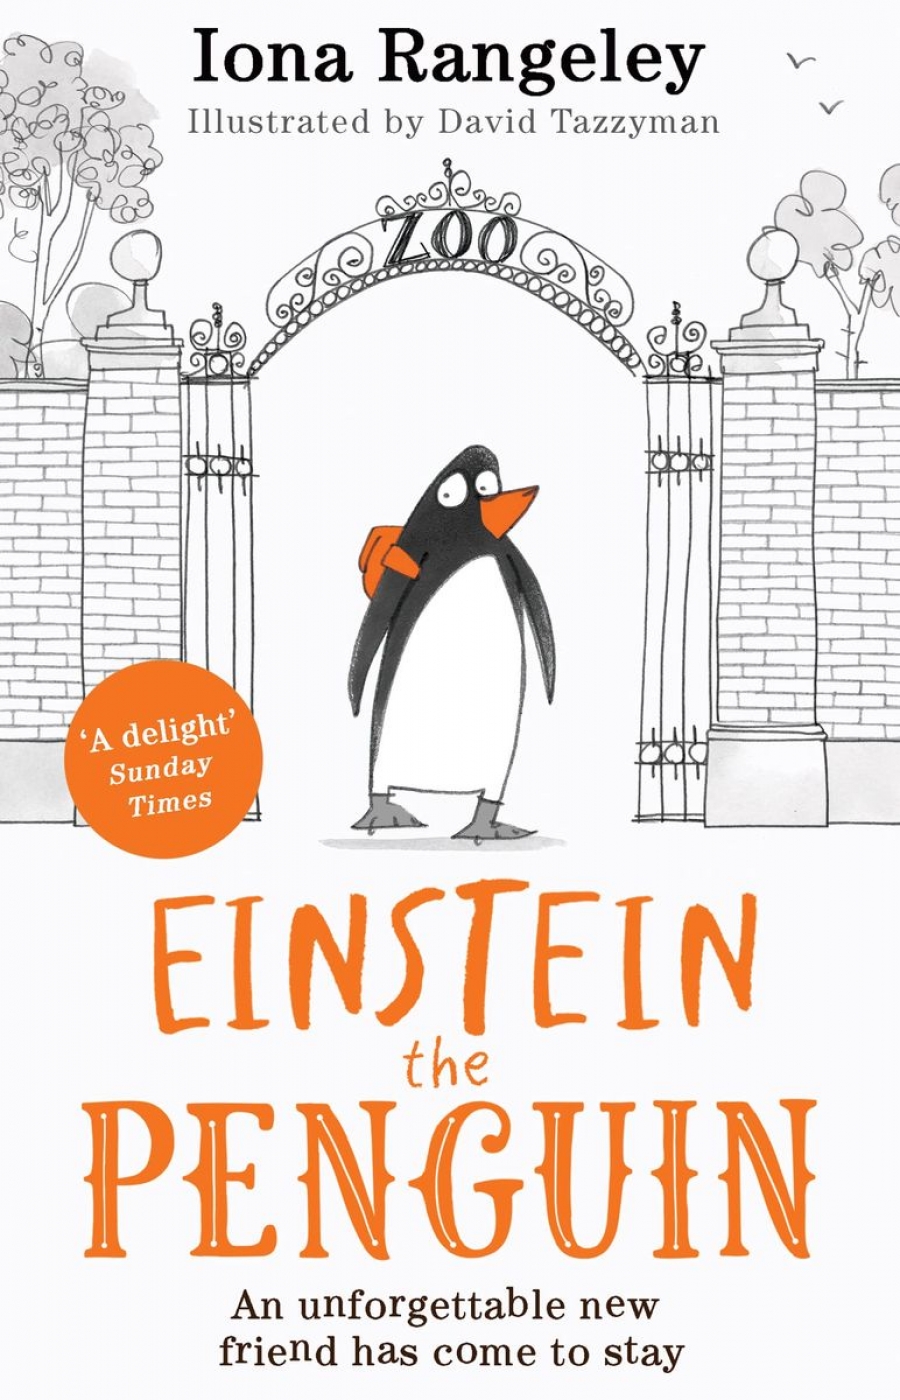 Rangeley Iona Einstein the Penguin 